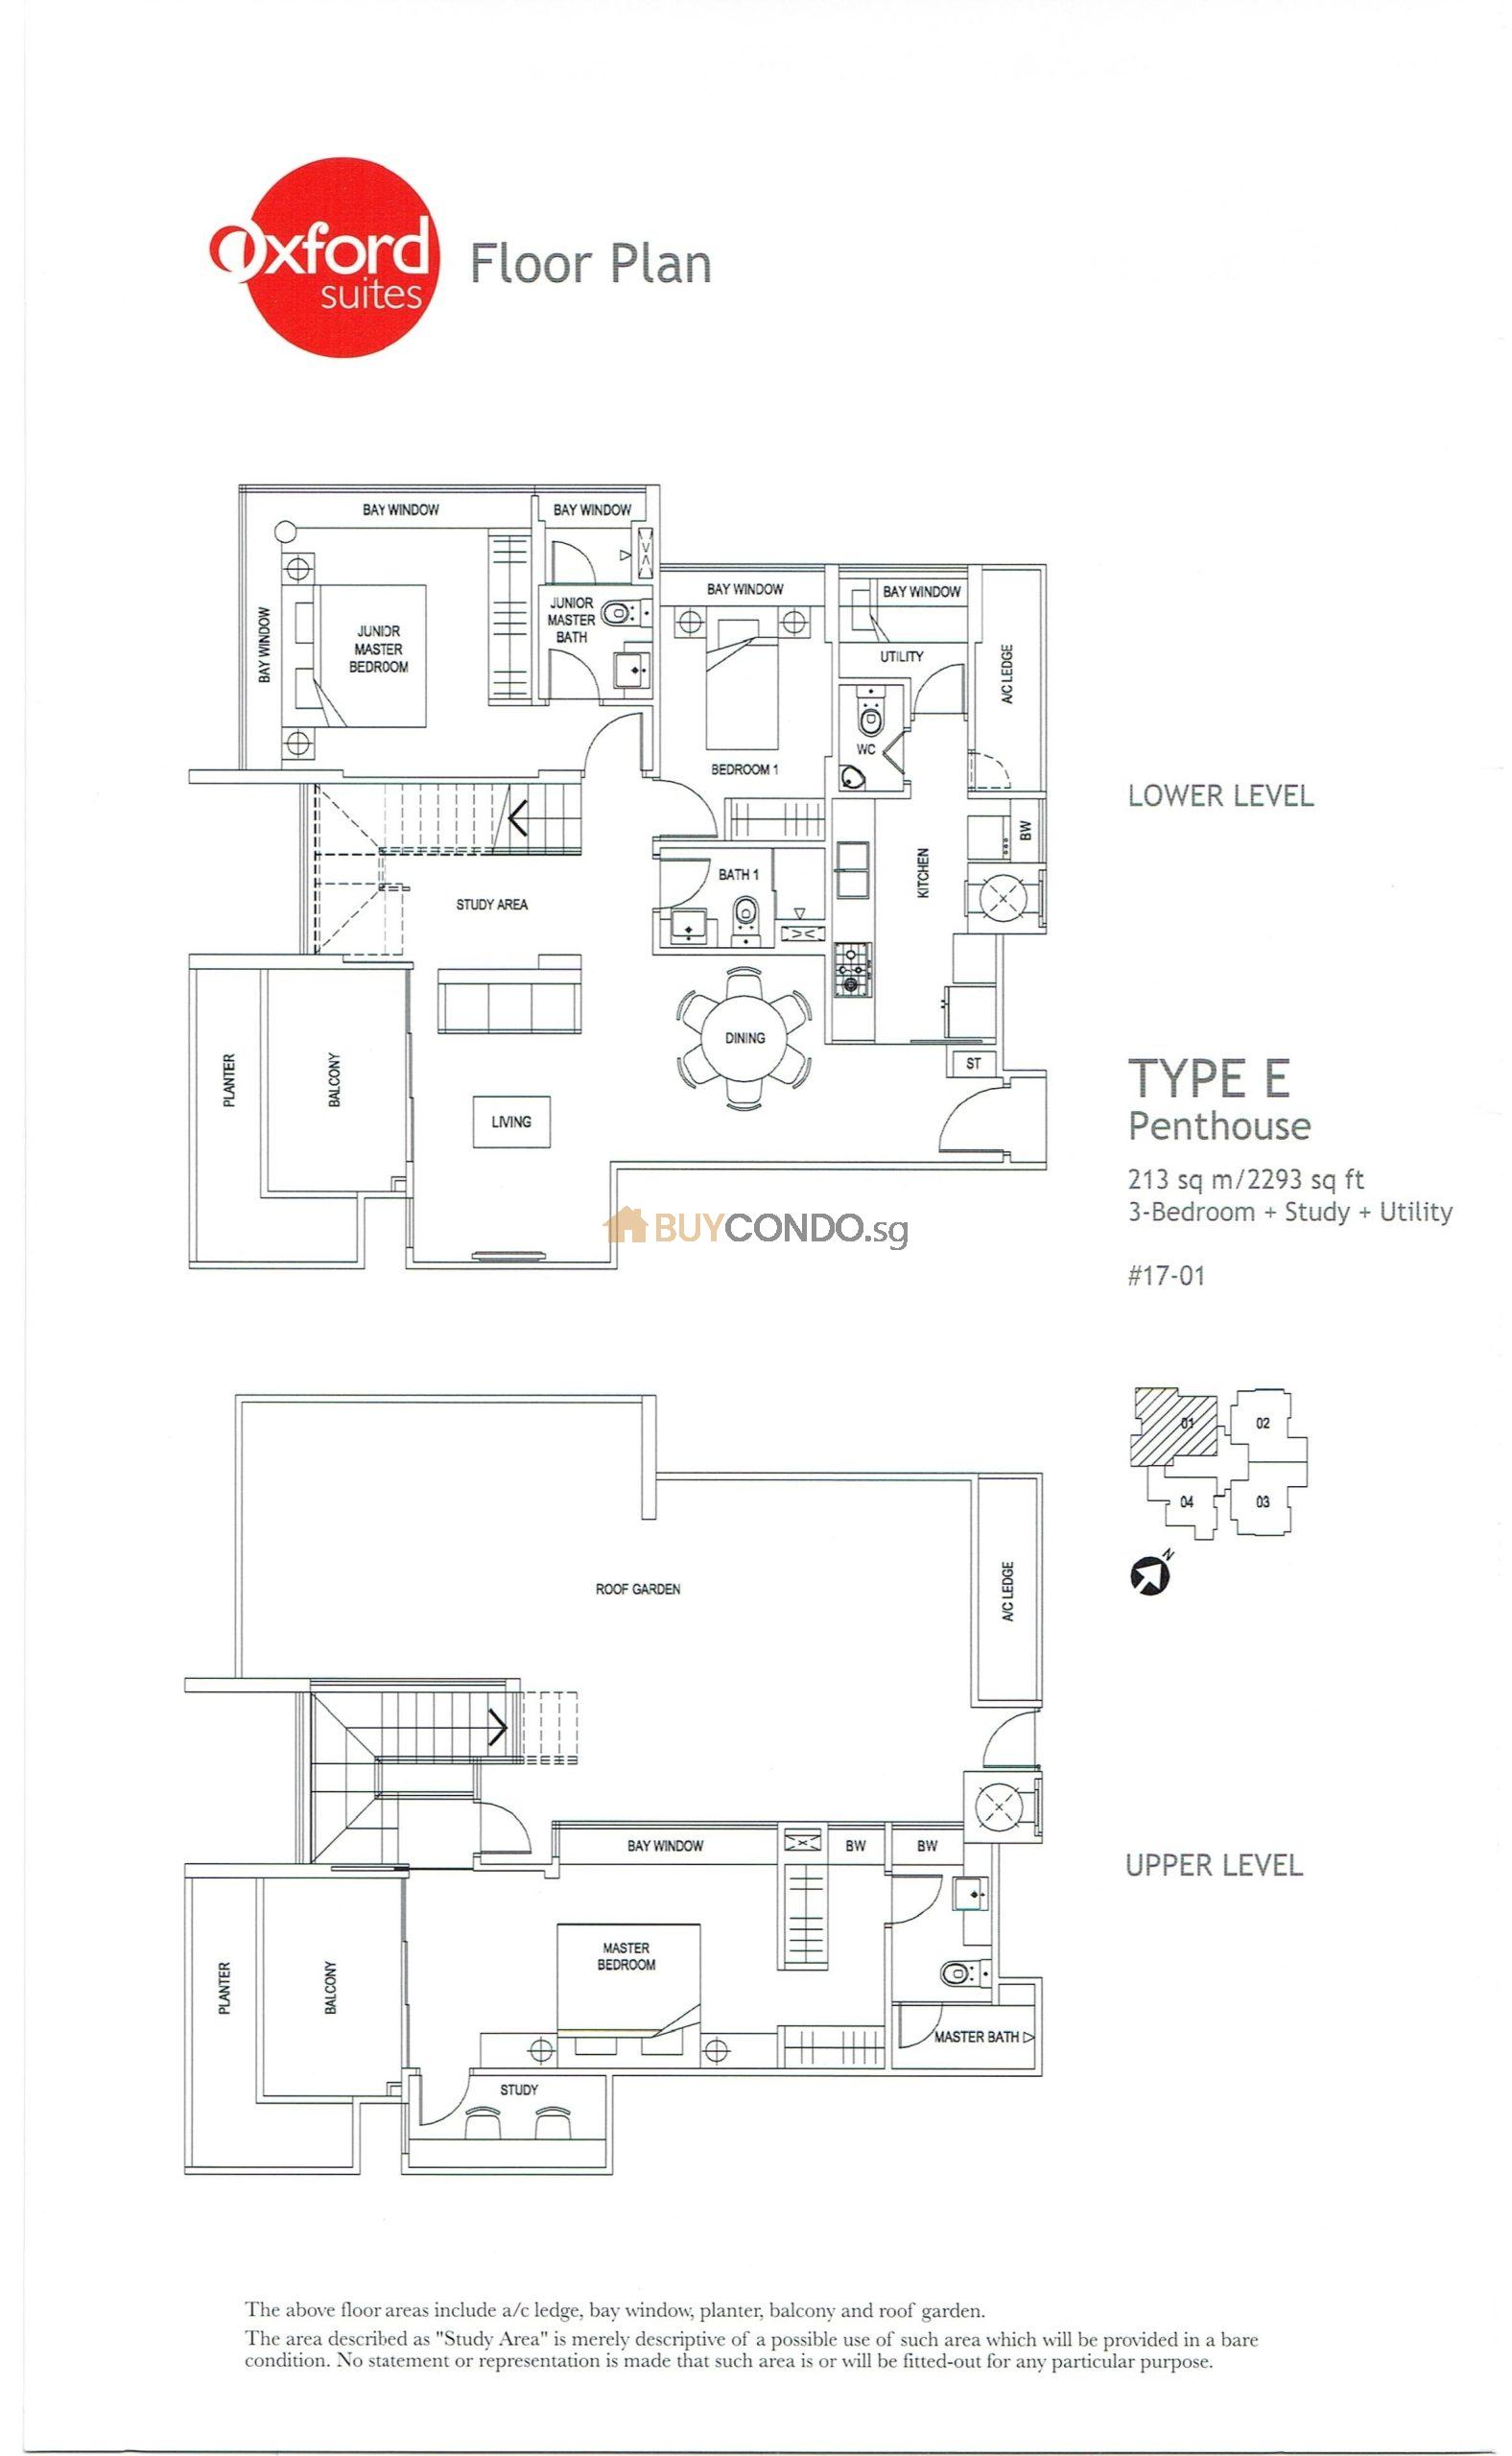 Oxford Suites Condominium Floor Plan